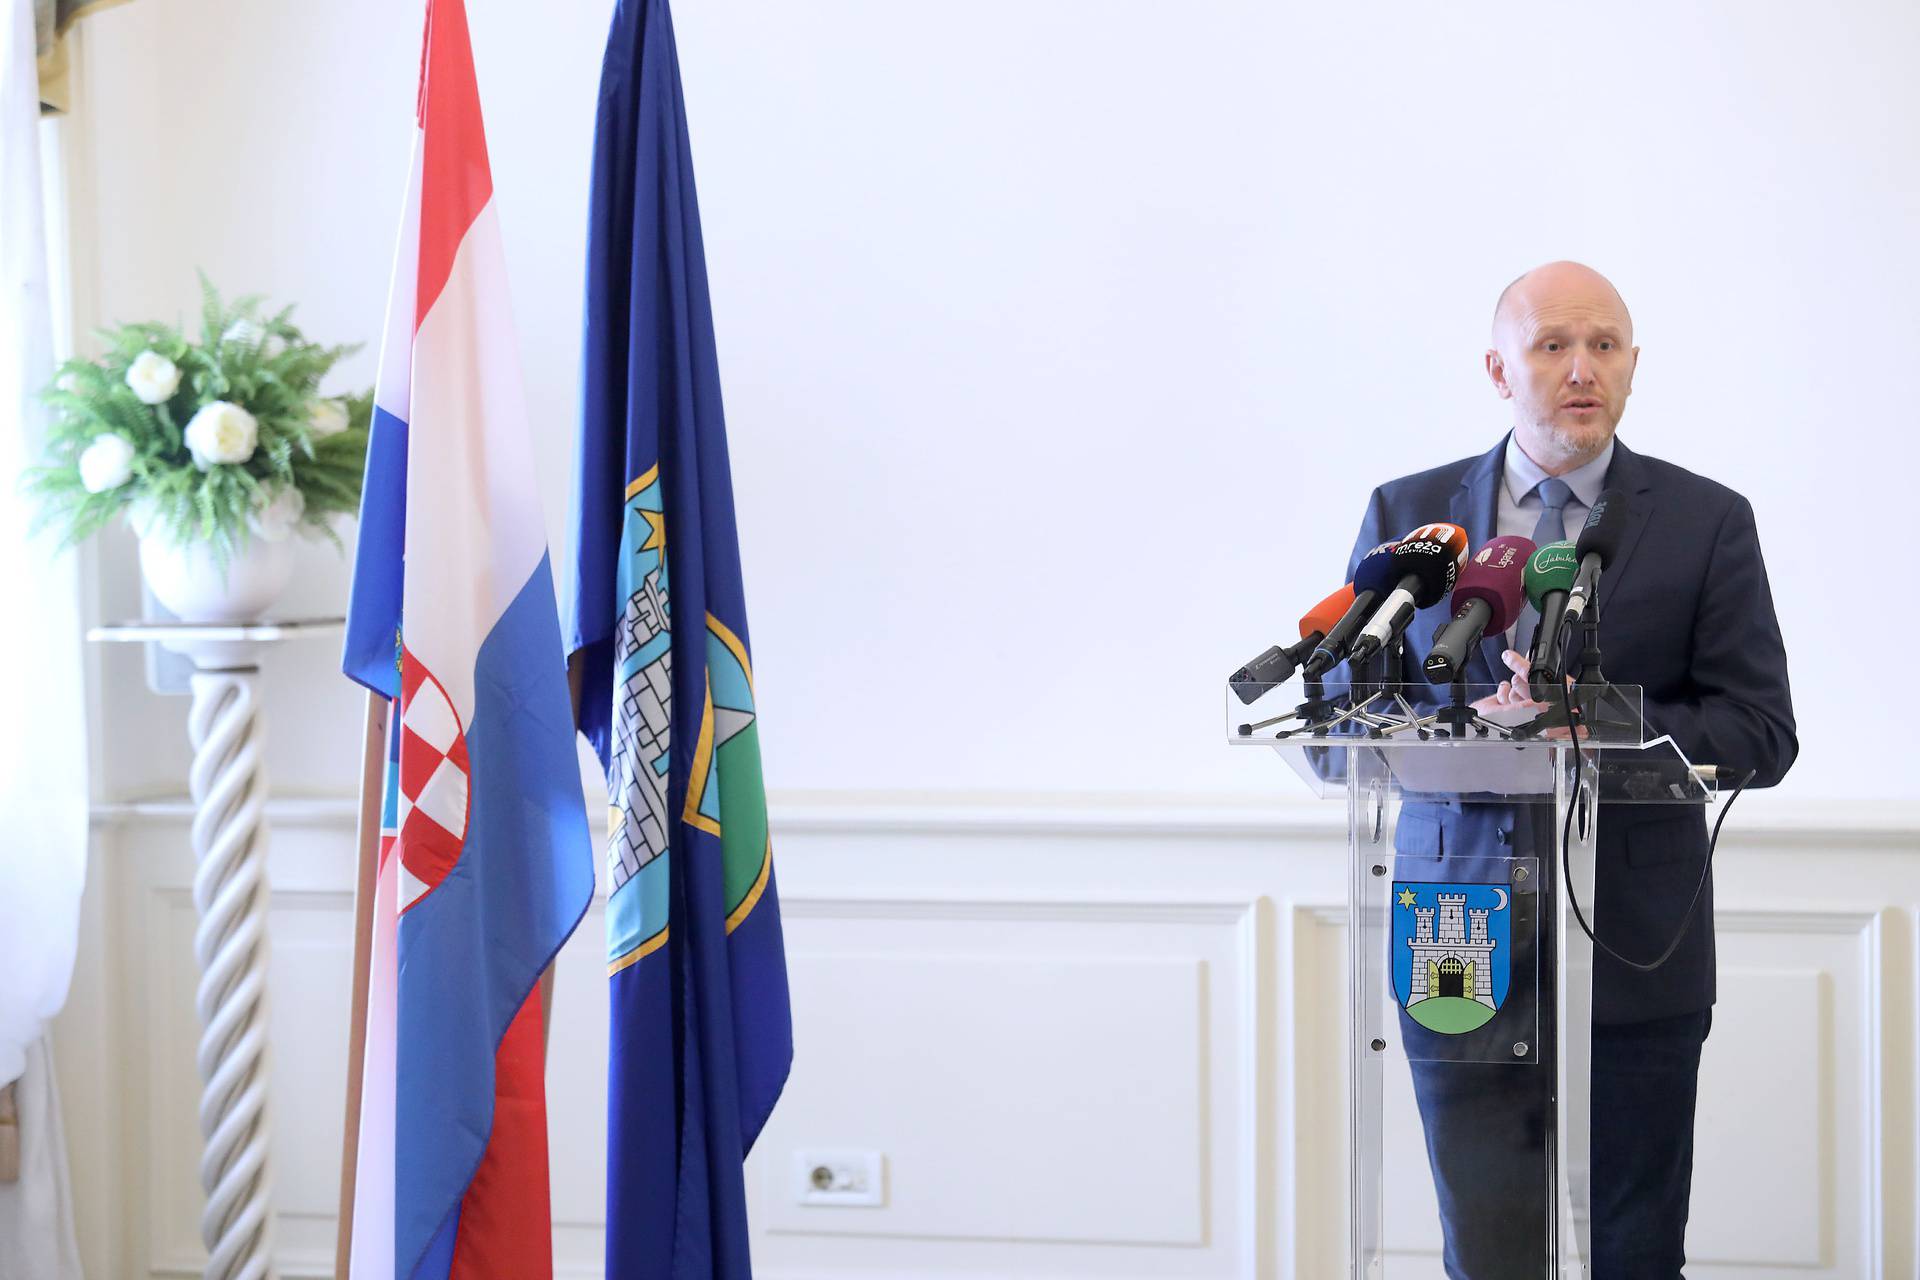 Petek: Zagreb propada uz Bandića, premijer ga podržava